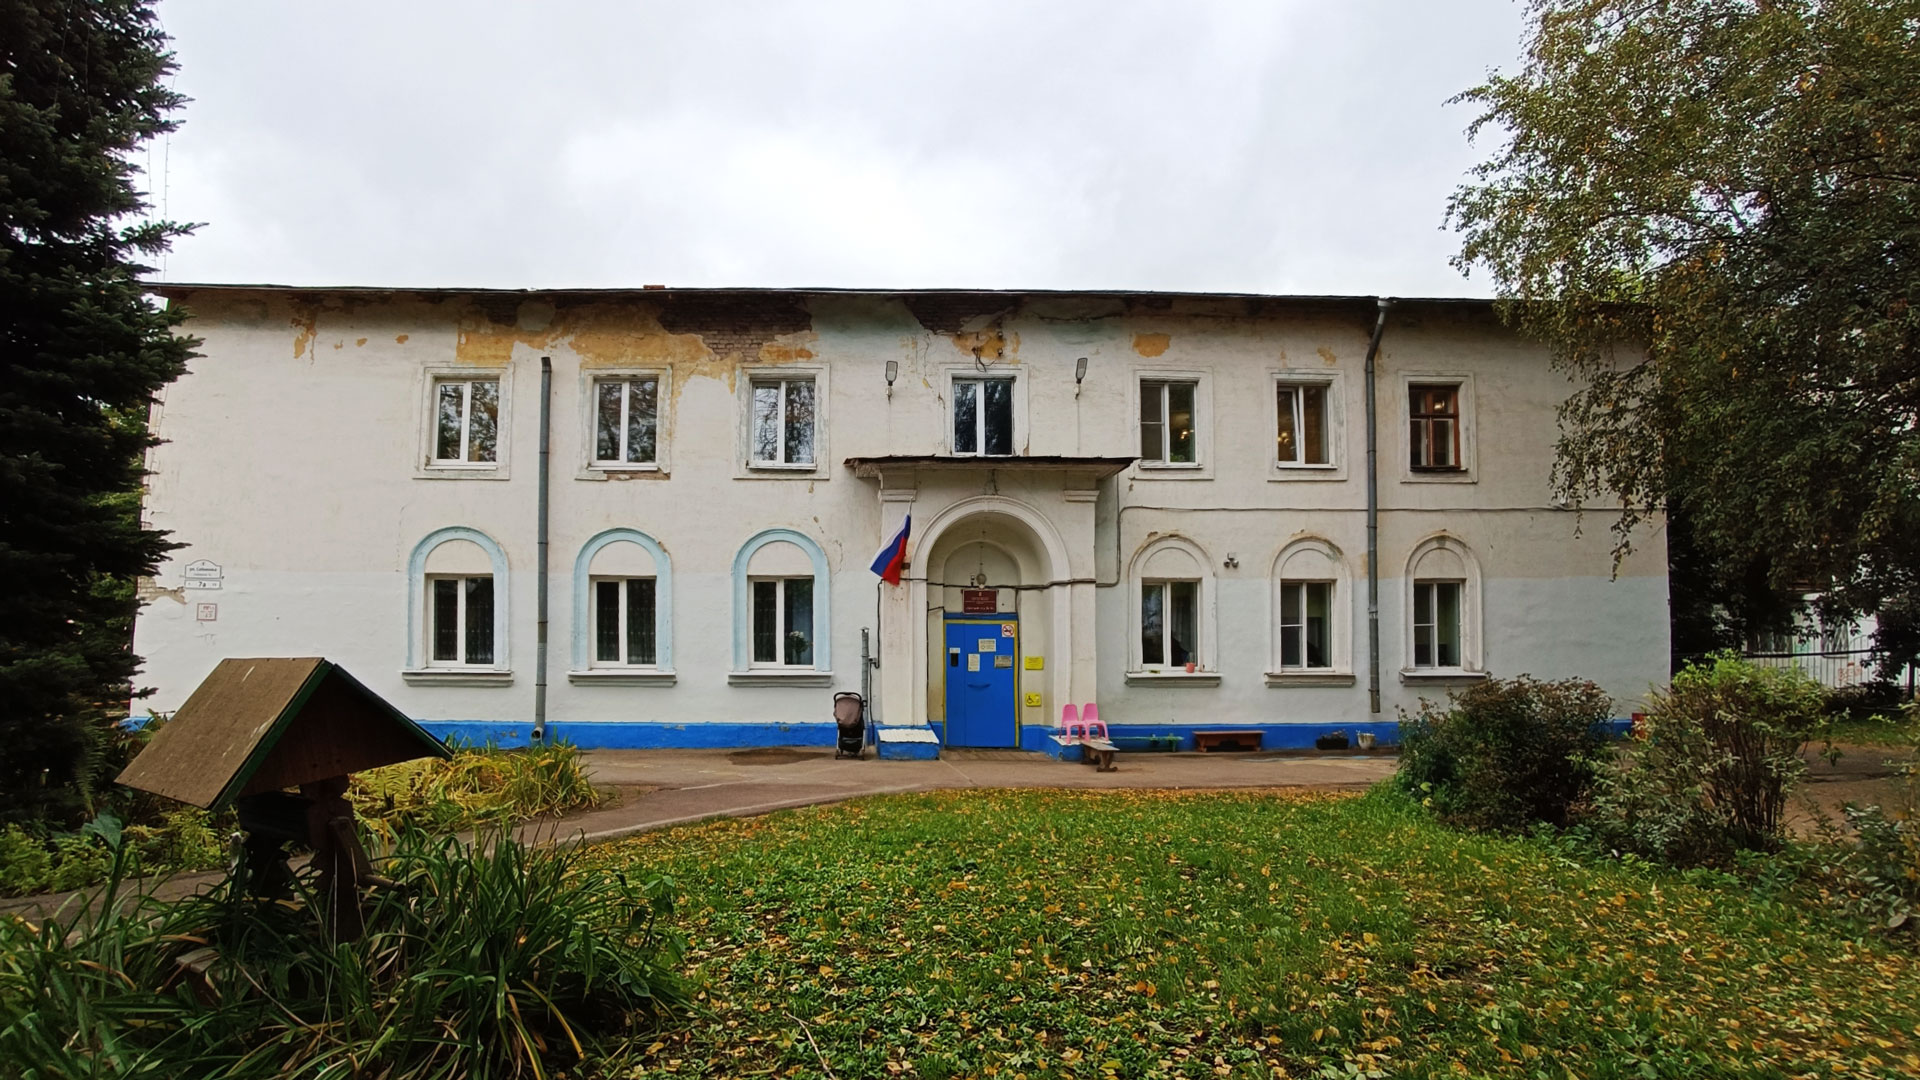 Детский сад 21 Ярославль: общий вид здания.